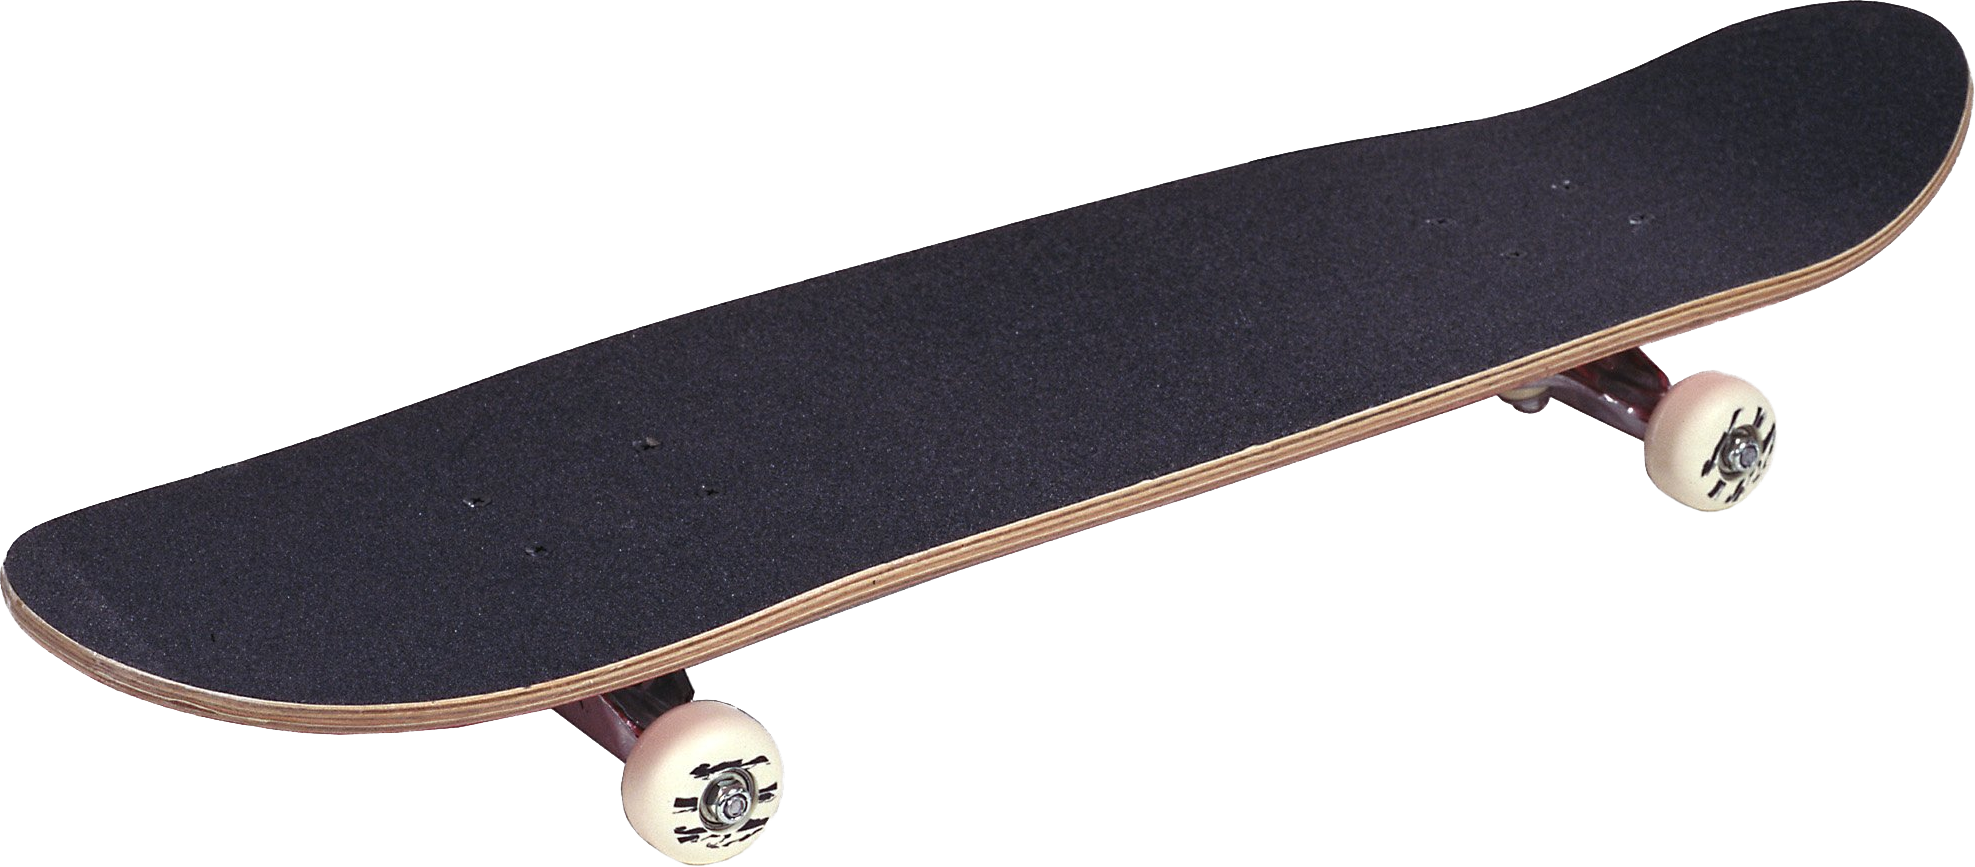 Skateboard Transparent Background